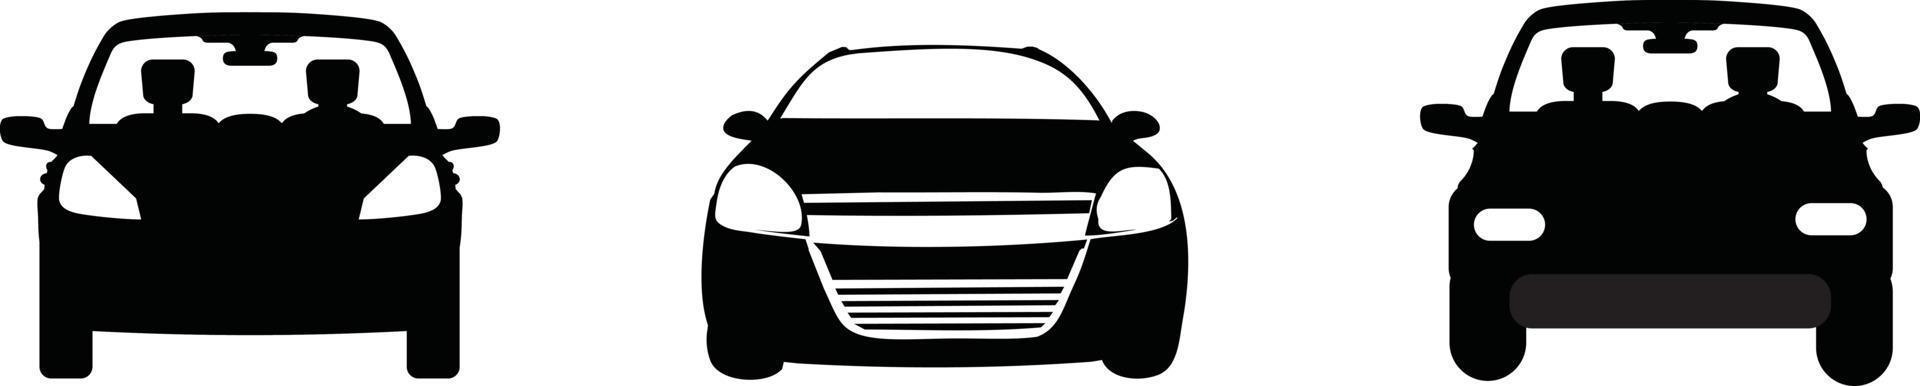 icona dell'auto. veicolo auto isolato. icone di trasporto. vista frontale della siluetta dell'automobile. berlina auto, veicolo o automobile simbolo su sfondo bianco, vettore di stock